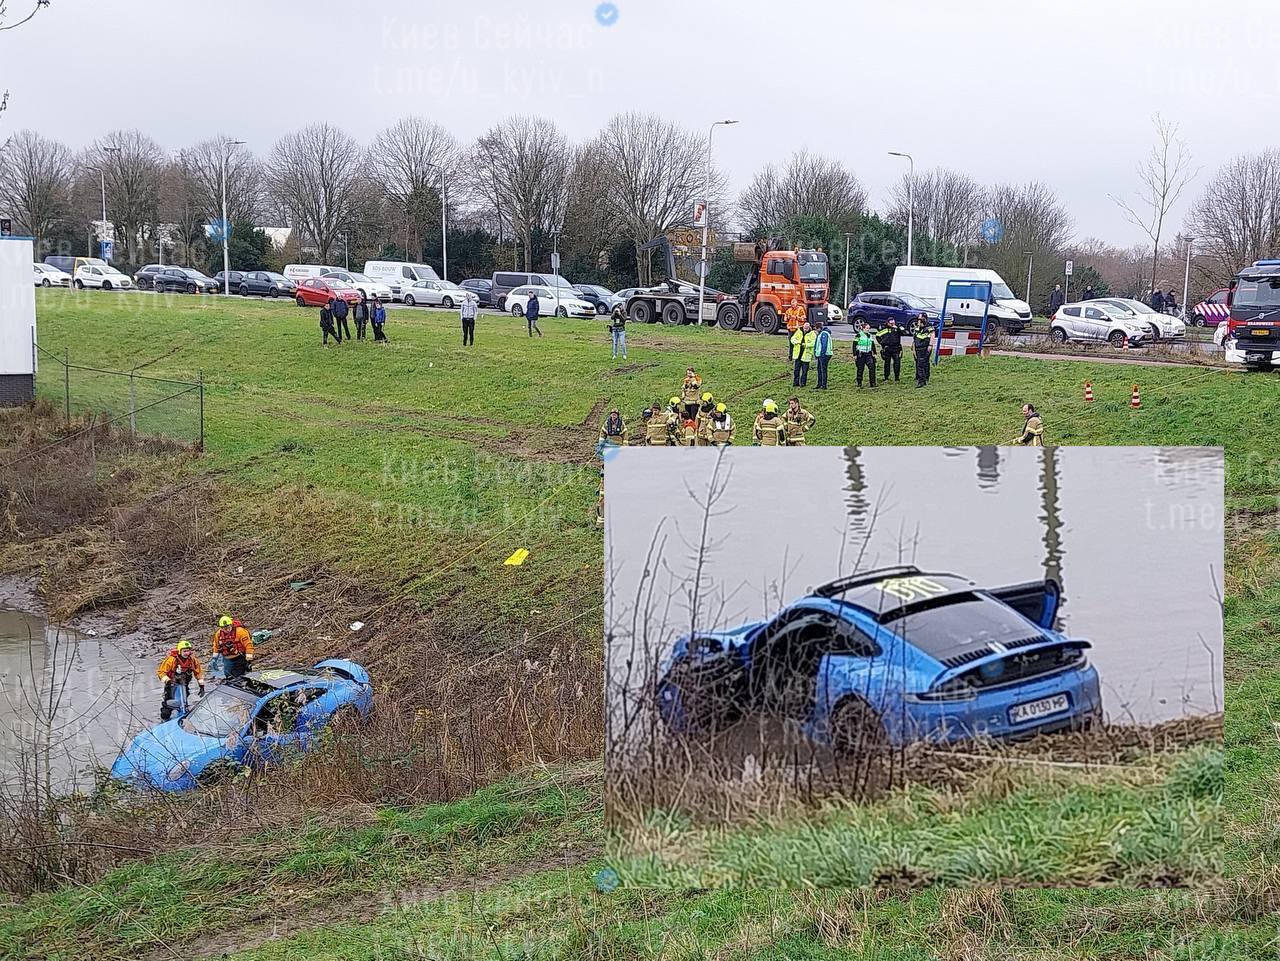 В Нидерландах в озере утопили элитный спорткар на киевских номерах почти за 7 млн грн. Фото